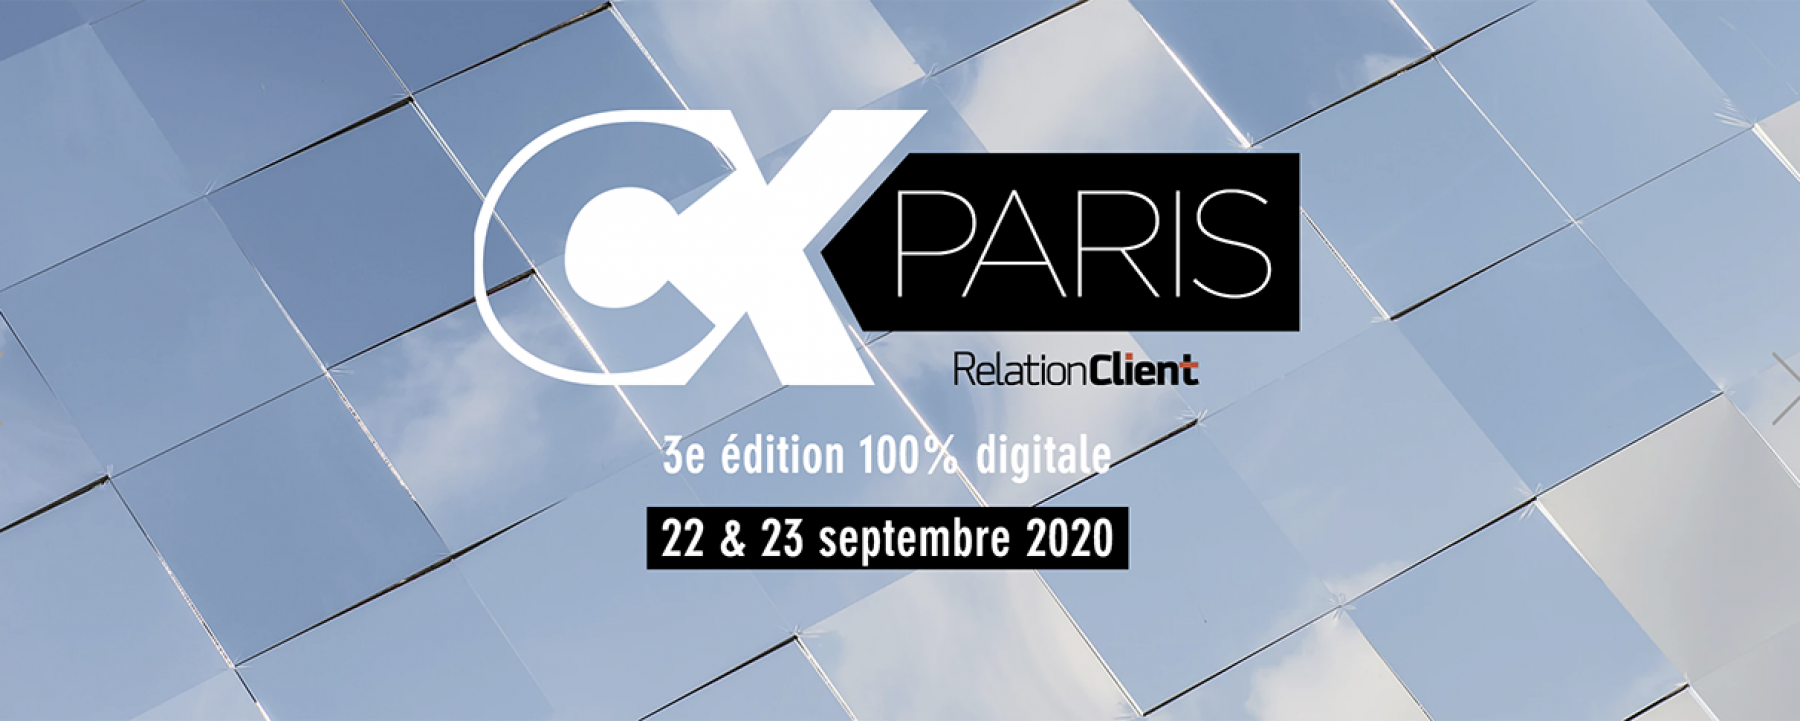 Evenement digital CX Paris 2020, les 22 et 23 septembre 2020, organisé par NetMediaGroup